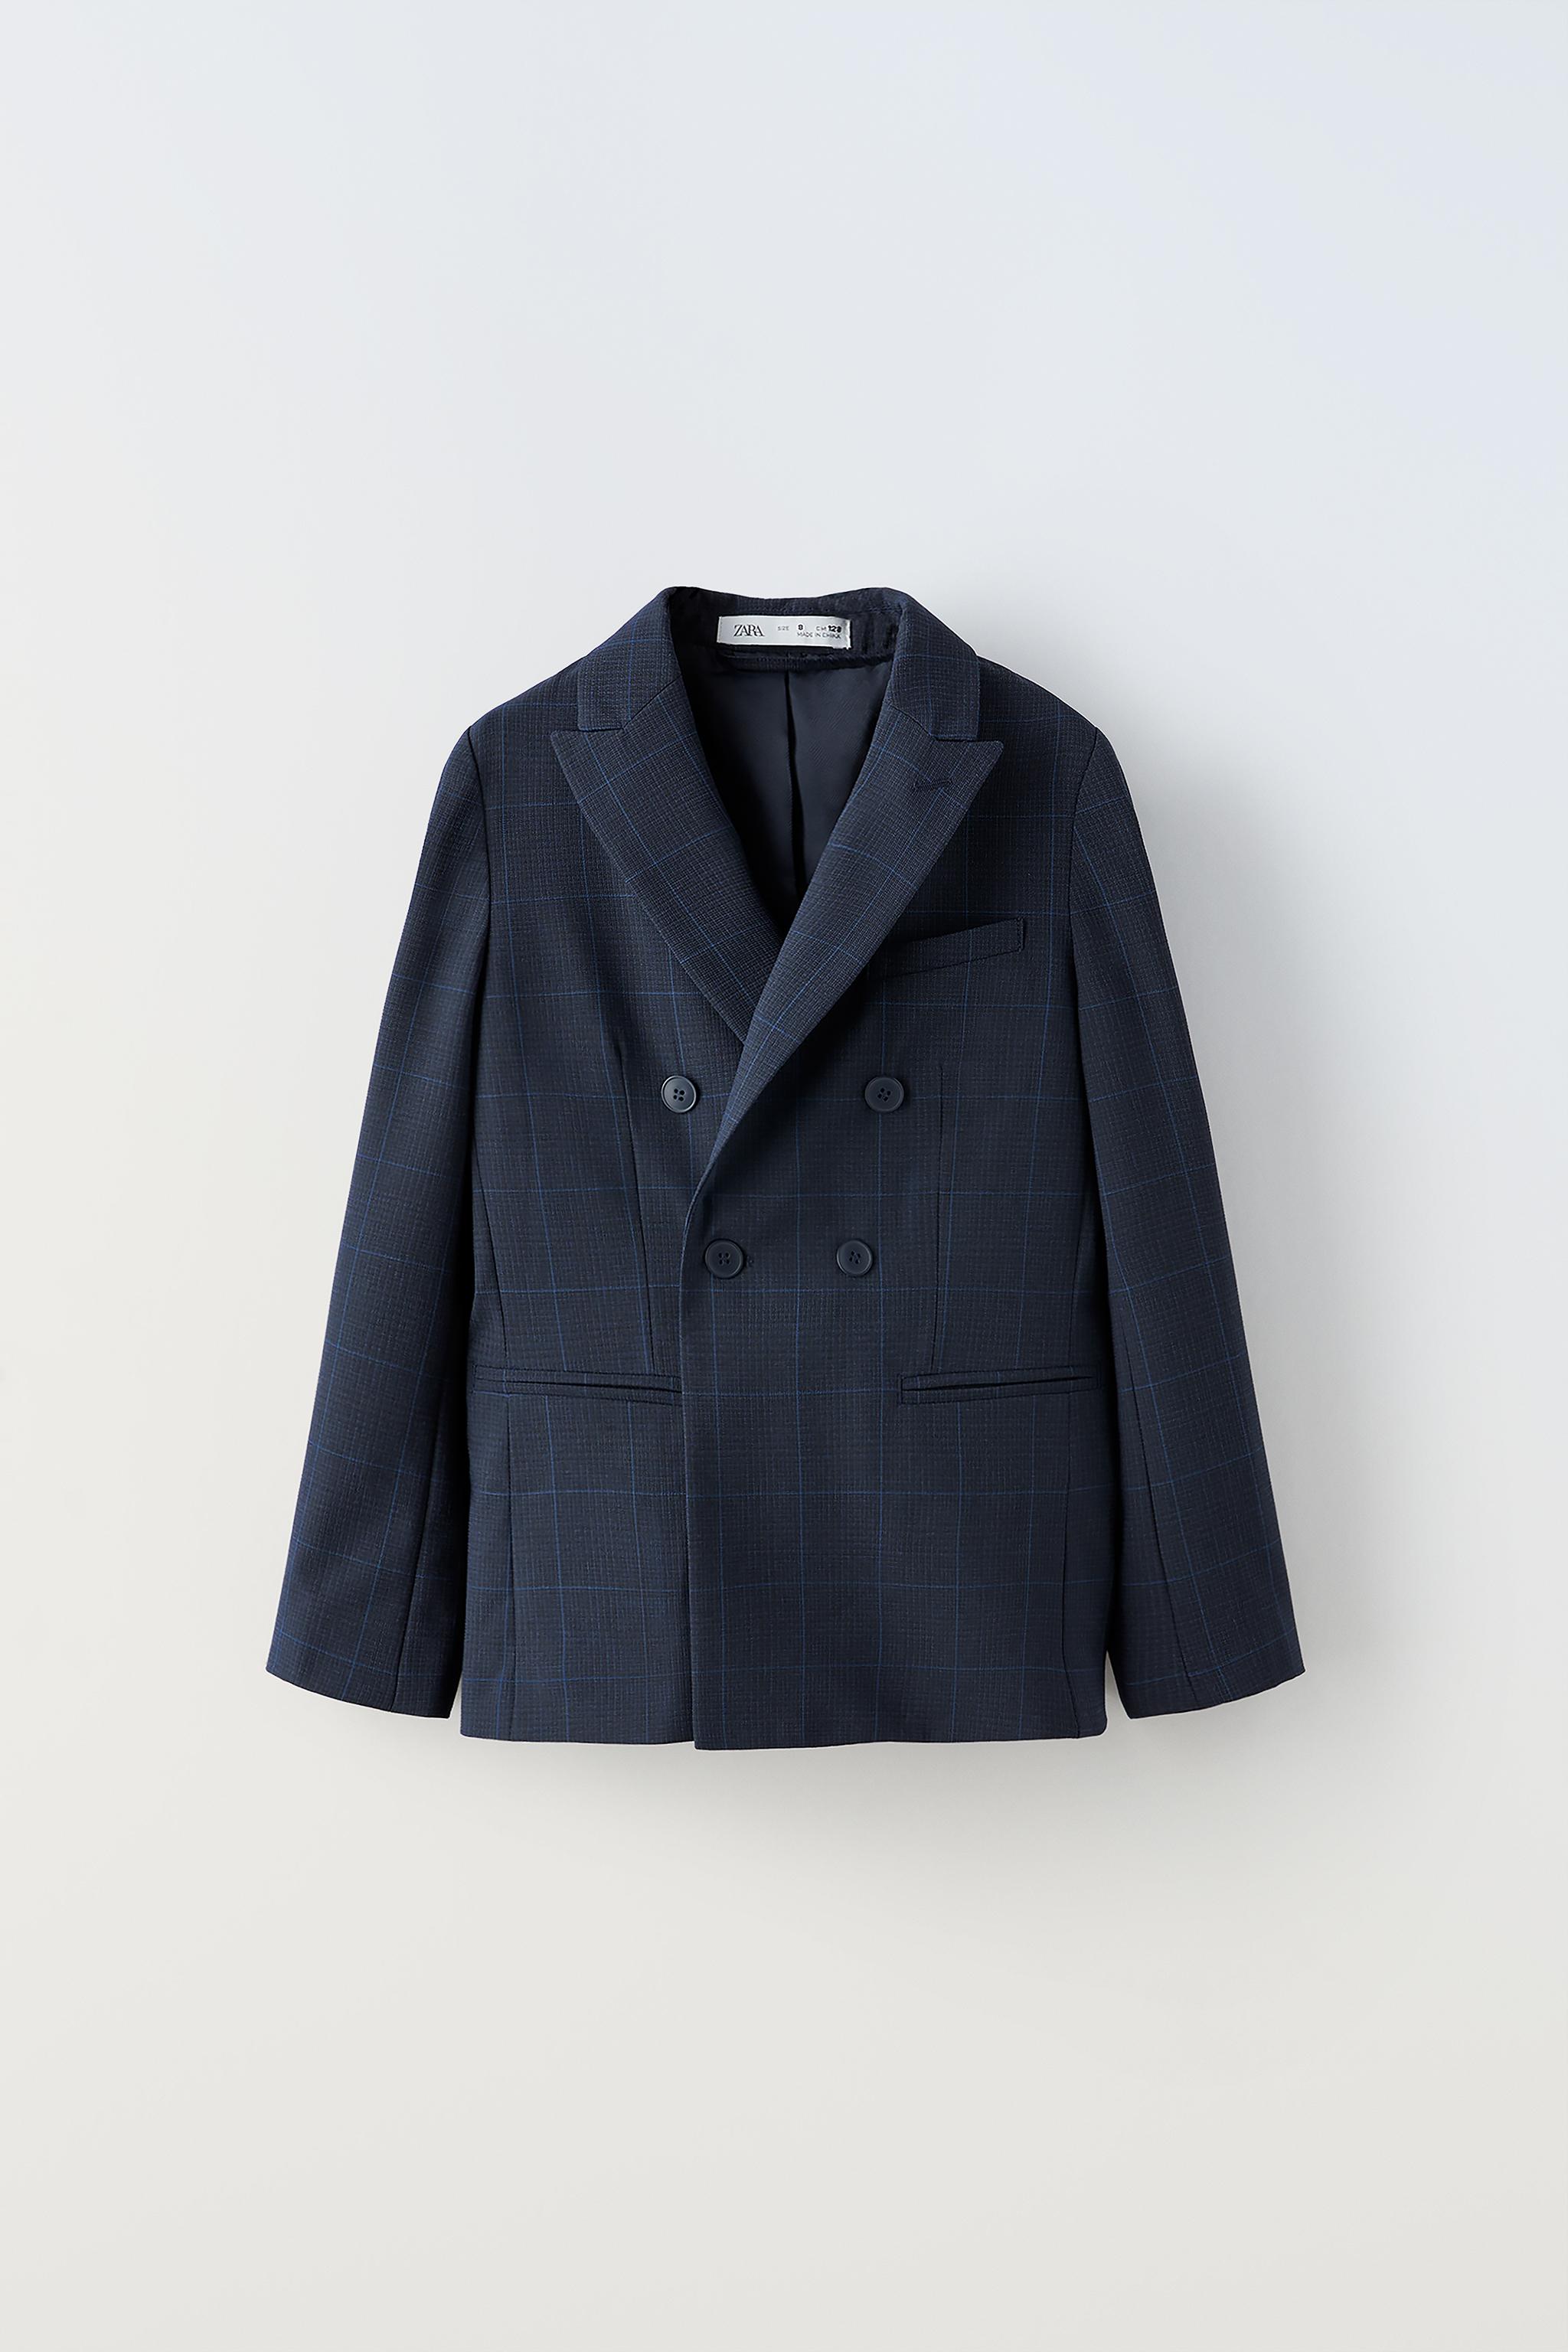 正規代理店 ZARA スーツ 160 卒業式 フォーマル H&Mシャツ ラルフ 